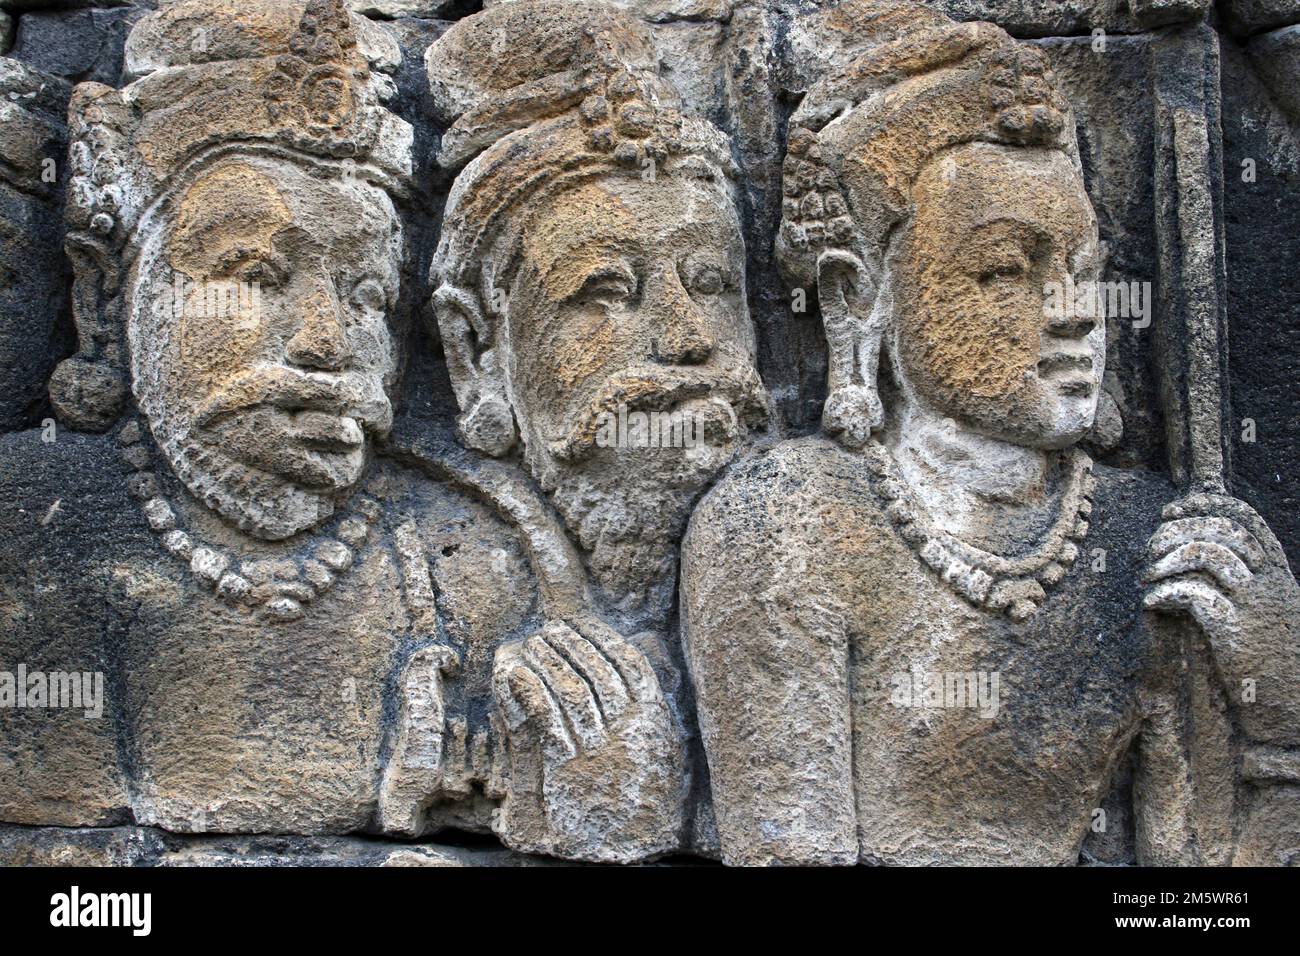 Sculpture de secours en pierre, Temple Borobudur, Java - anciens hommes ascétiques Banque D'Images